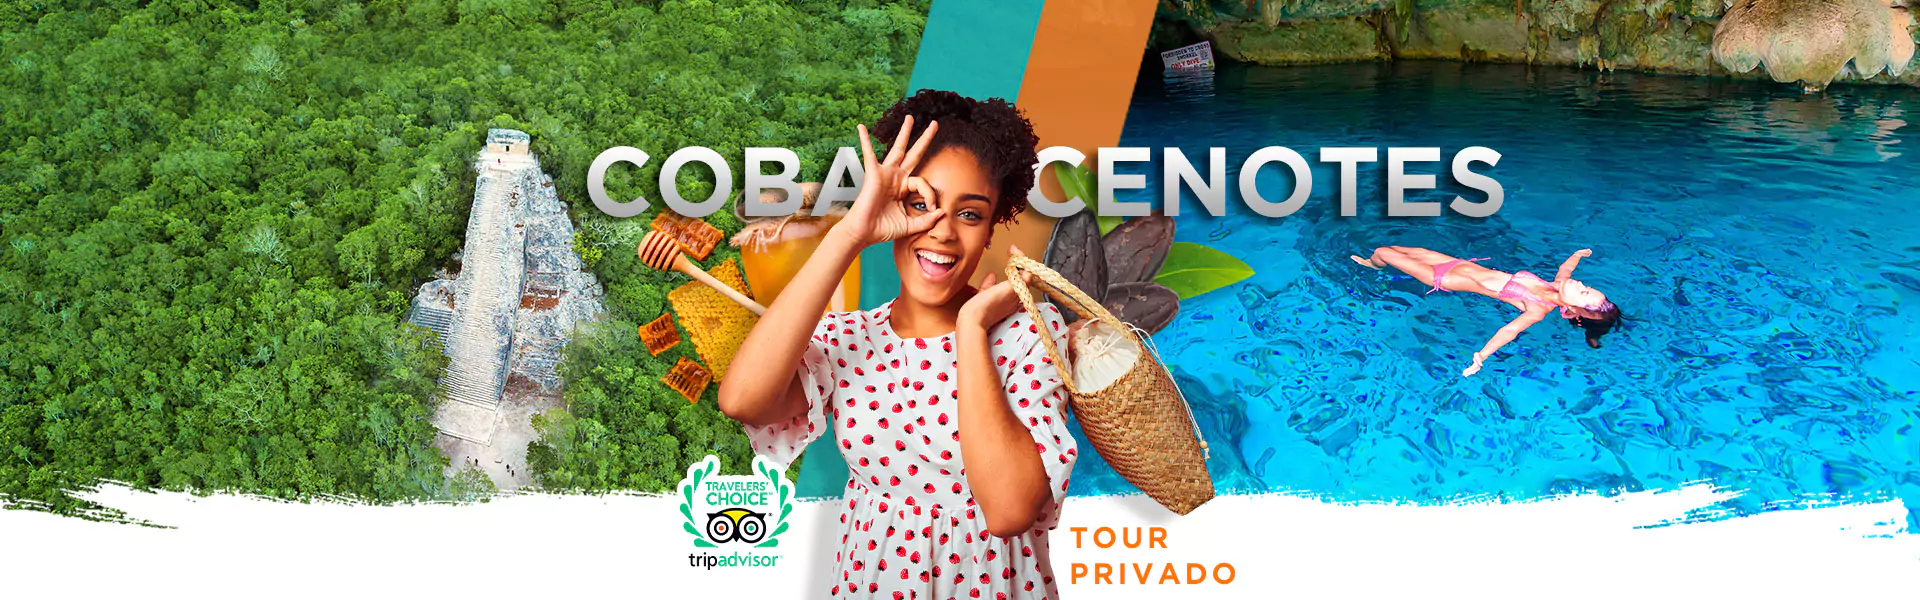 Coba + 2 cenotes tour best deals in Tulum.